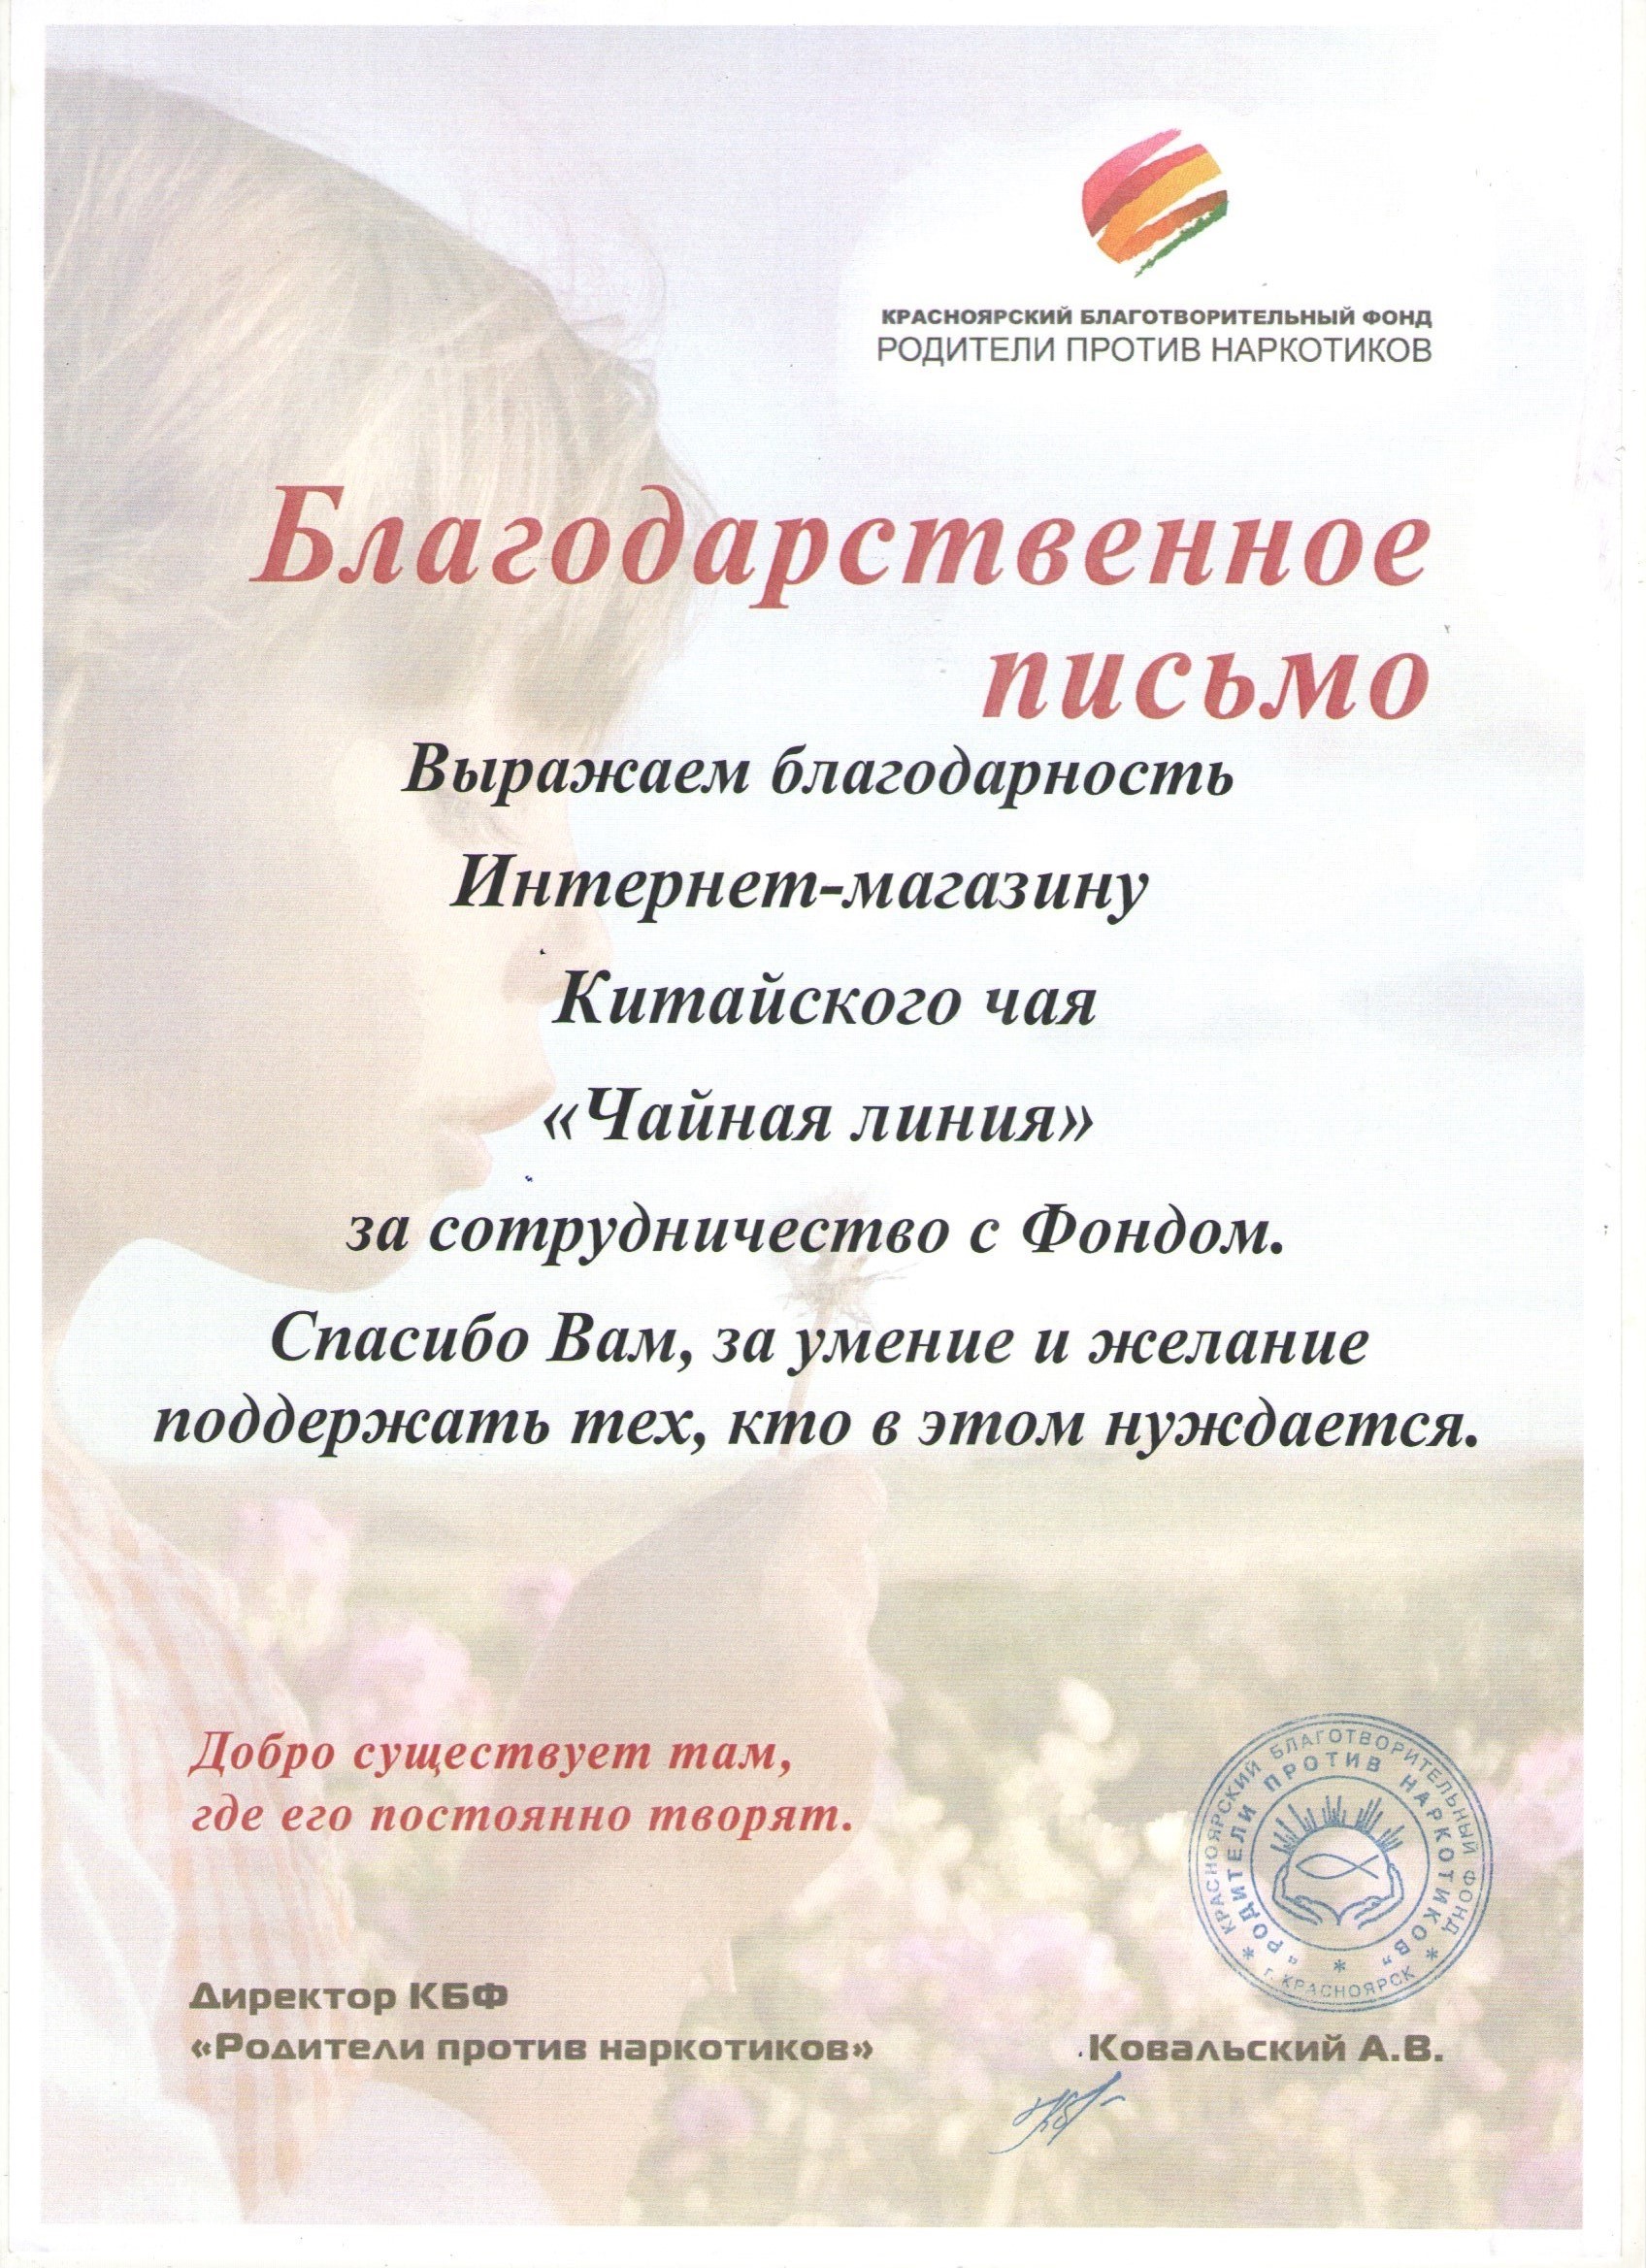 Красноярский благотворительный фонд "Родители против наркотиков"